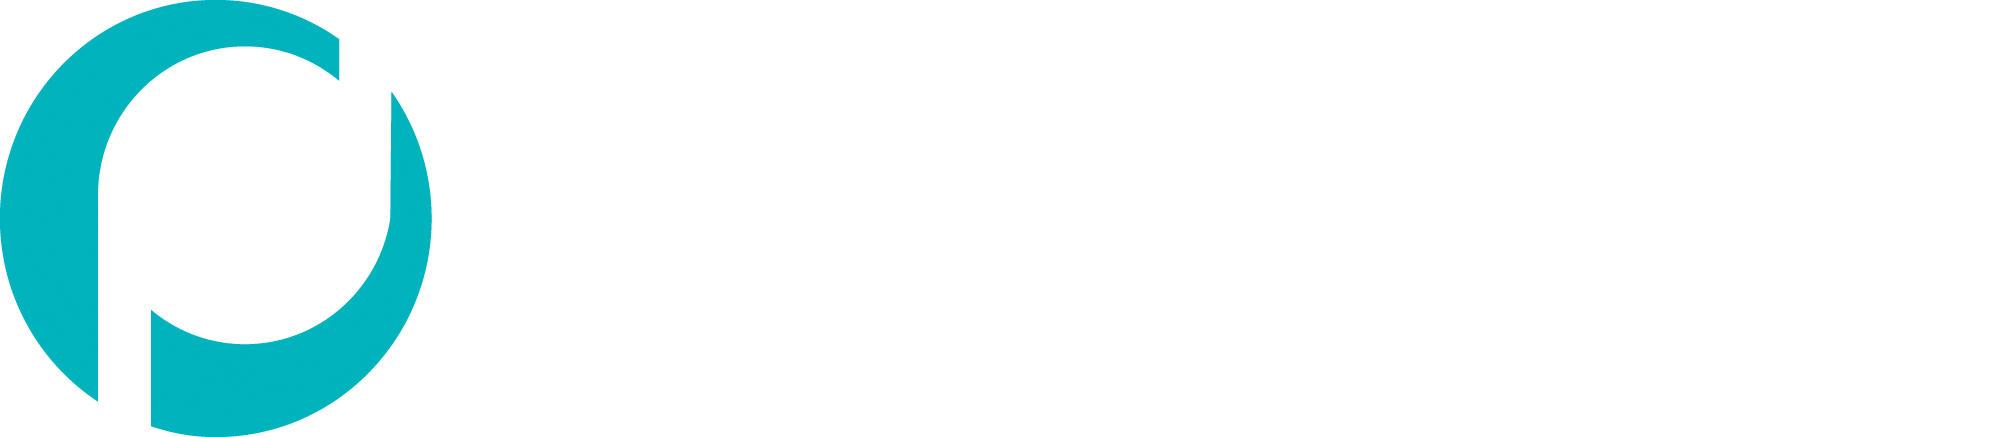 Proficio Logo White